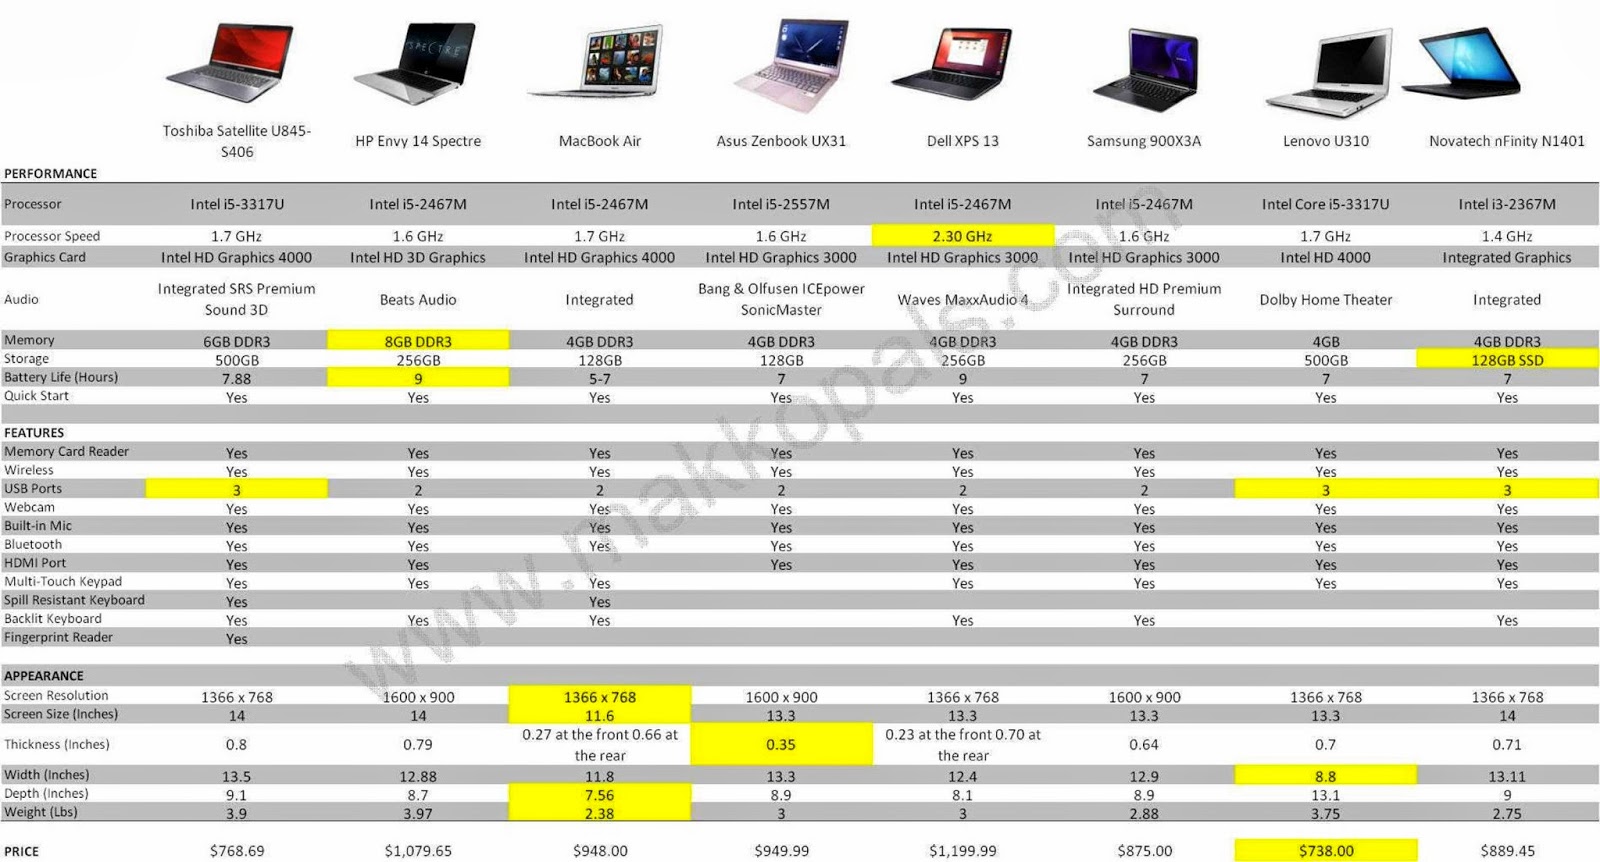 makko Pals: UltraBooks 2013 Comparison